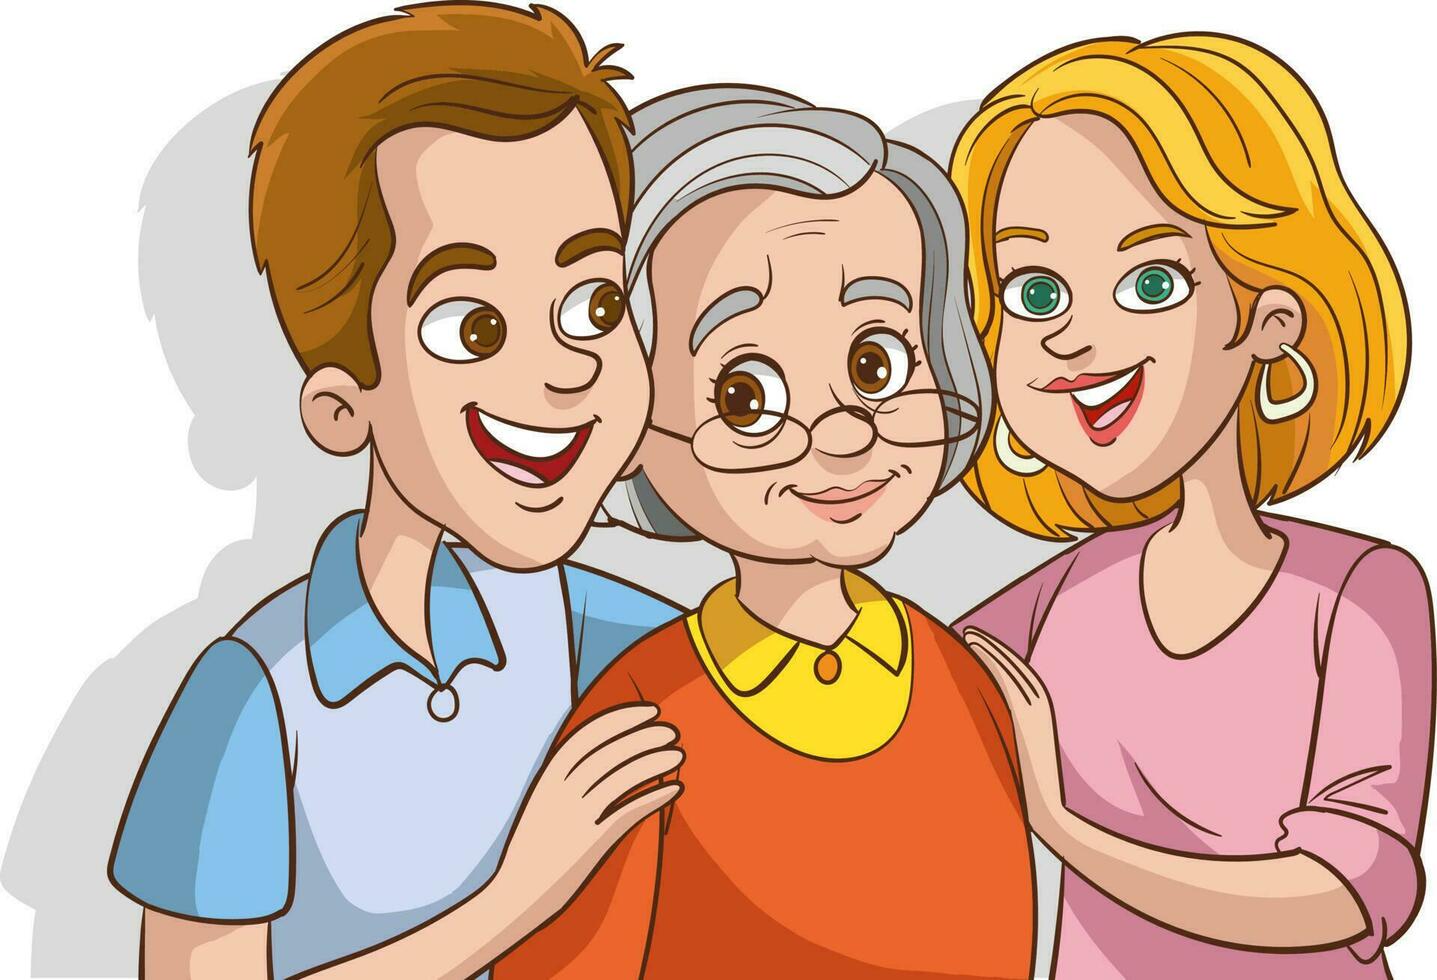 grandmother and young grandchildren cartoon vector